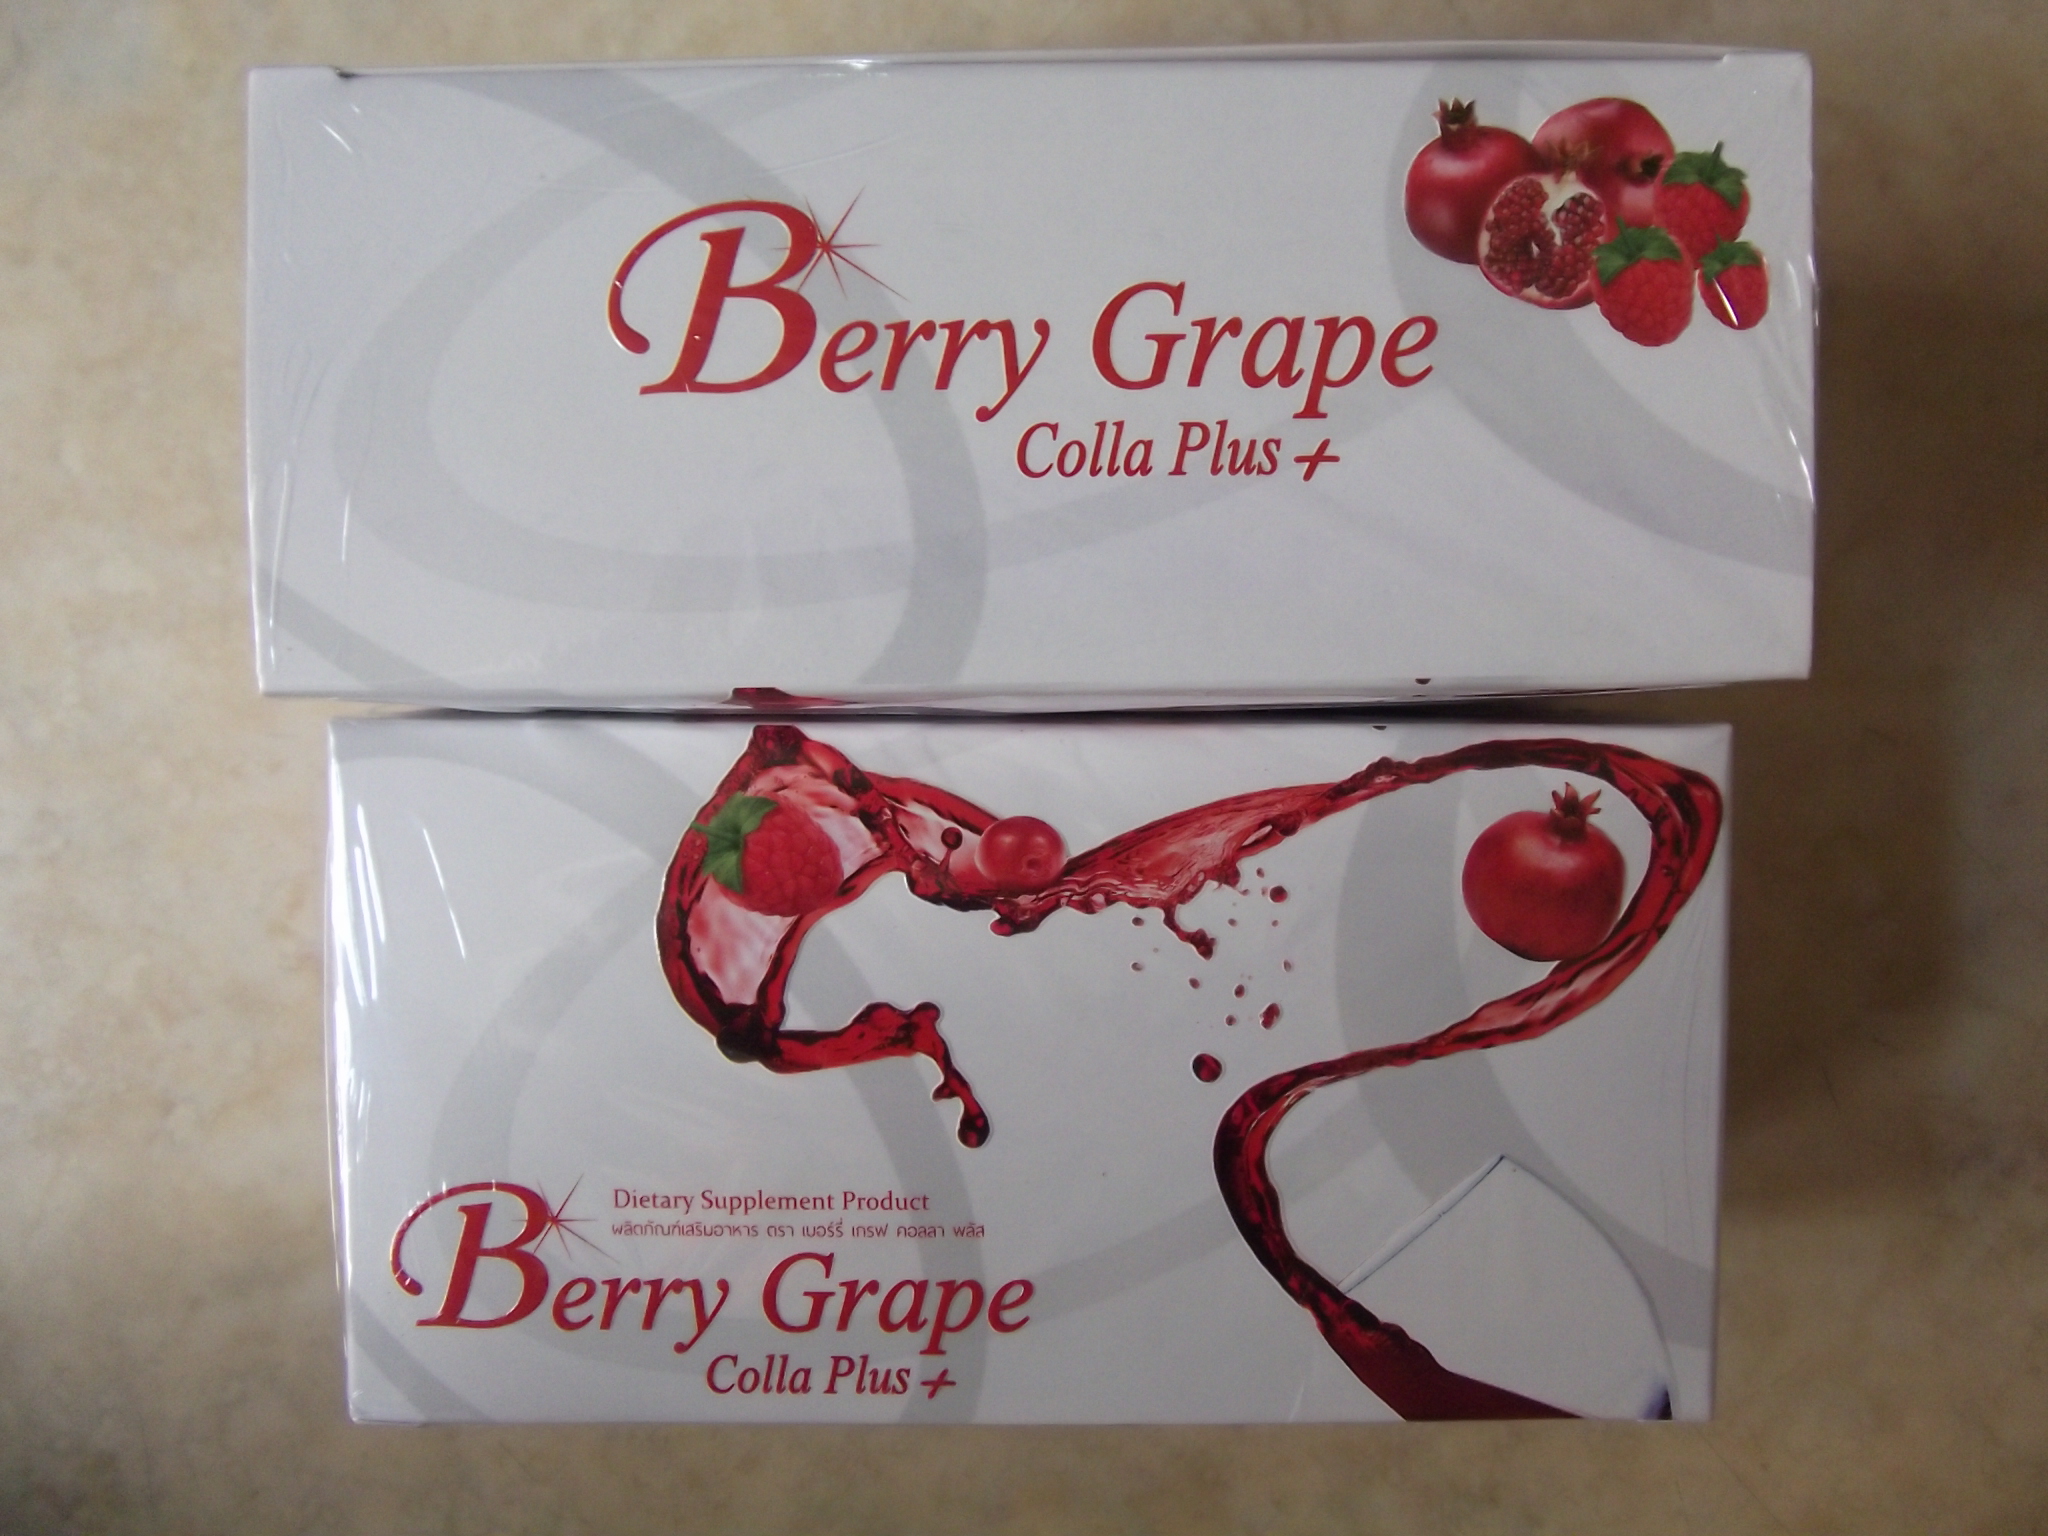 Berry Grape Colla Plus เบอร์รี่เกรฟ คอลลาพลัส เครื่องดื่มสำเร็จรูป คอลลาเจนสกัดผสมเบต้า-กูลแคน รสเบอร์รี่ดื่มง่ายจากสารสกัดธรรมชาติ